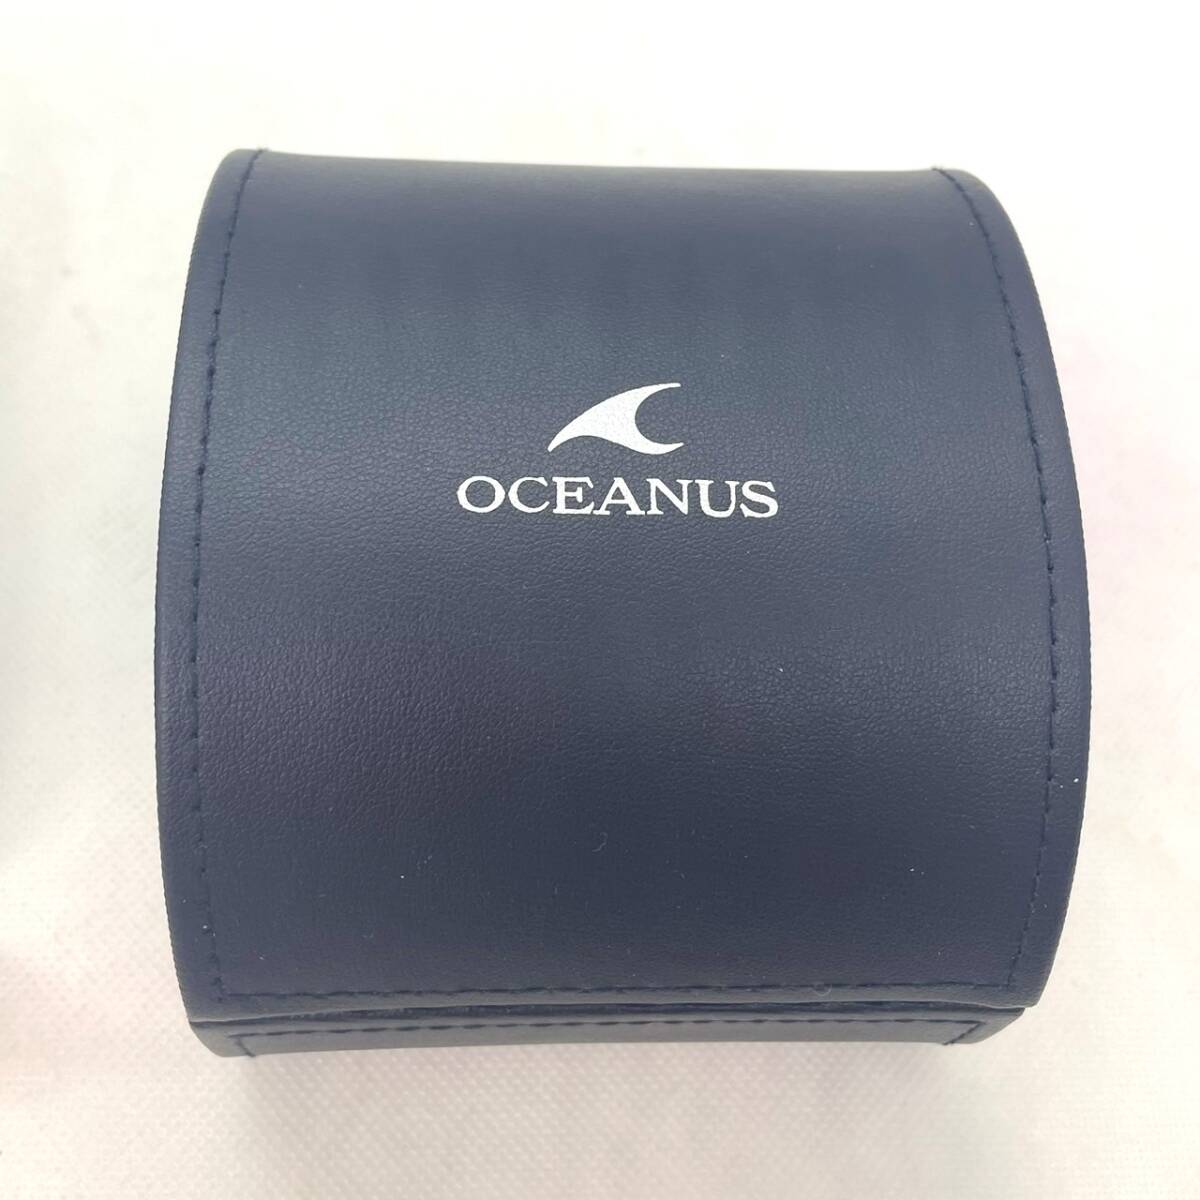 CASIO OCEANUS Casio Oceanus GPS мужской солнечные радиоволны 0CW-G1000 черный циферблат 5412 внутри коробка наружная коробка письменная гарантия изменение резина есть * краткое изложение раздел обязательно чтение 